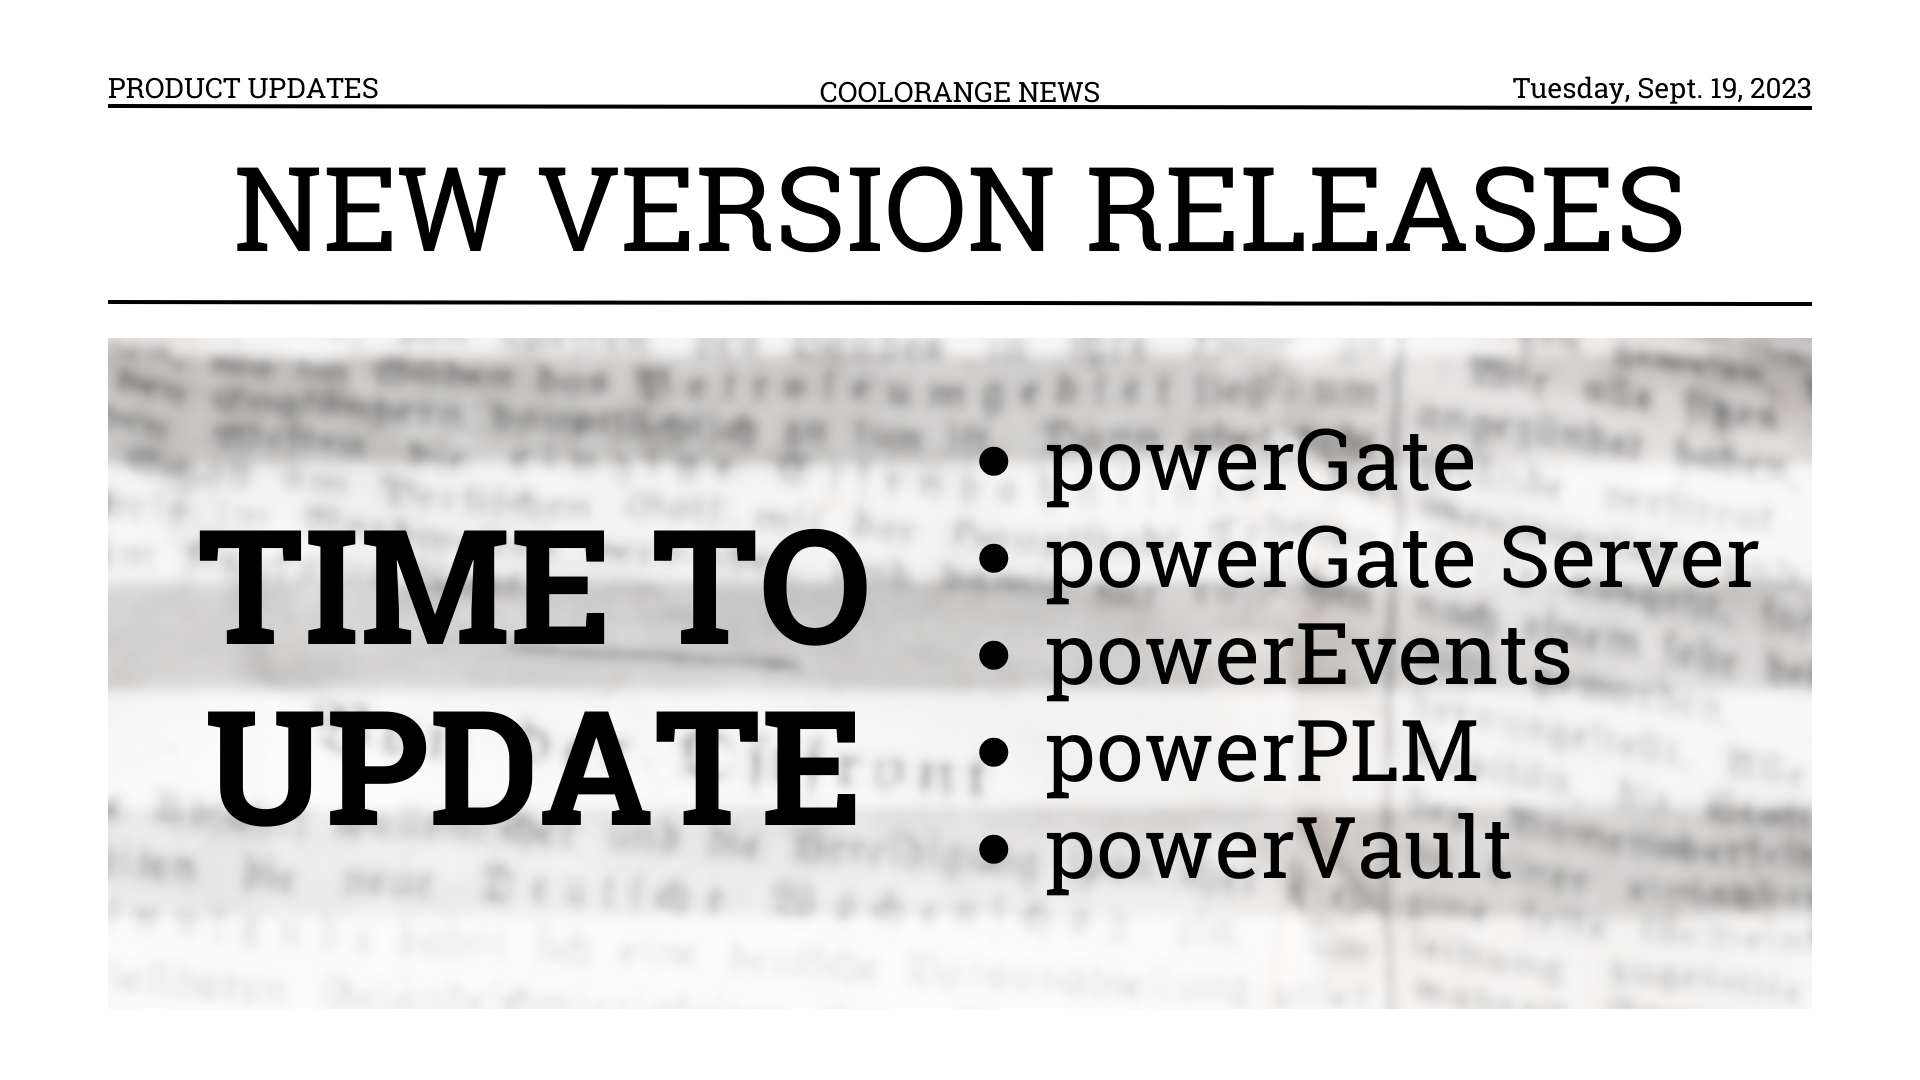 Actualizaciones de productos - powerGate, powerEvents, powerPLM y más...